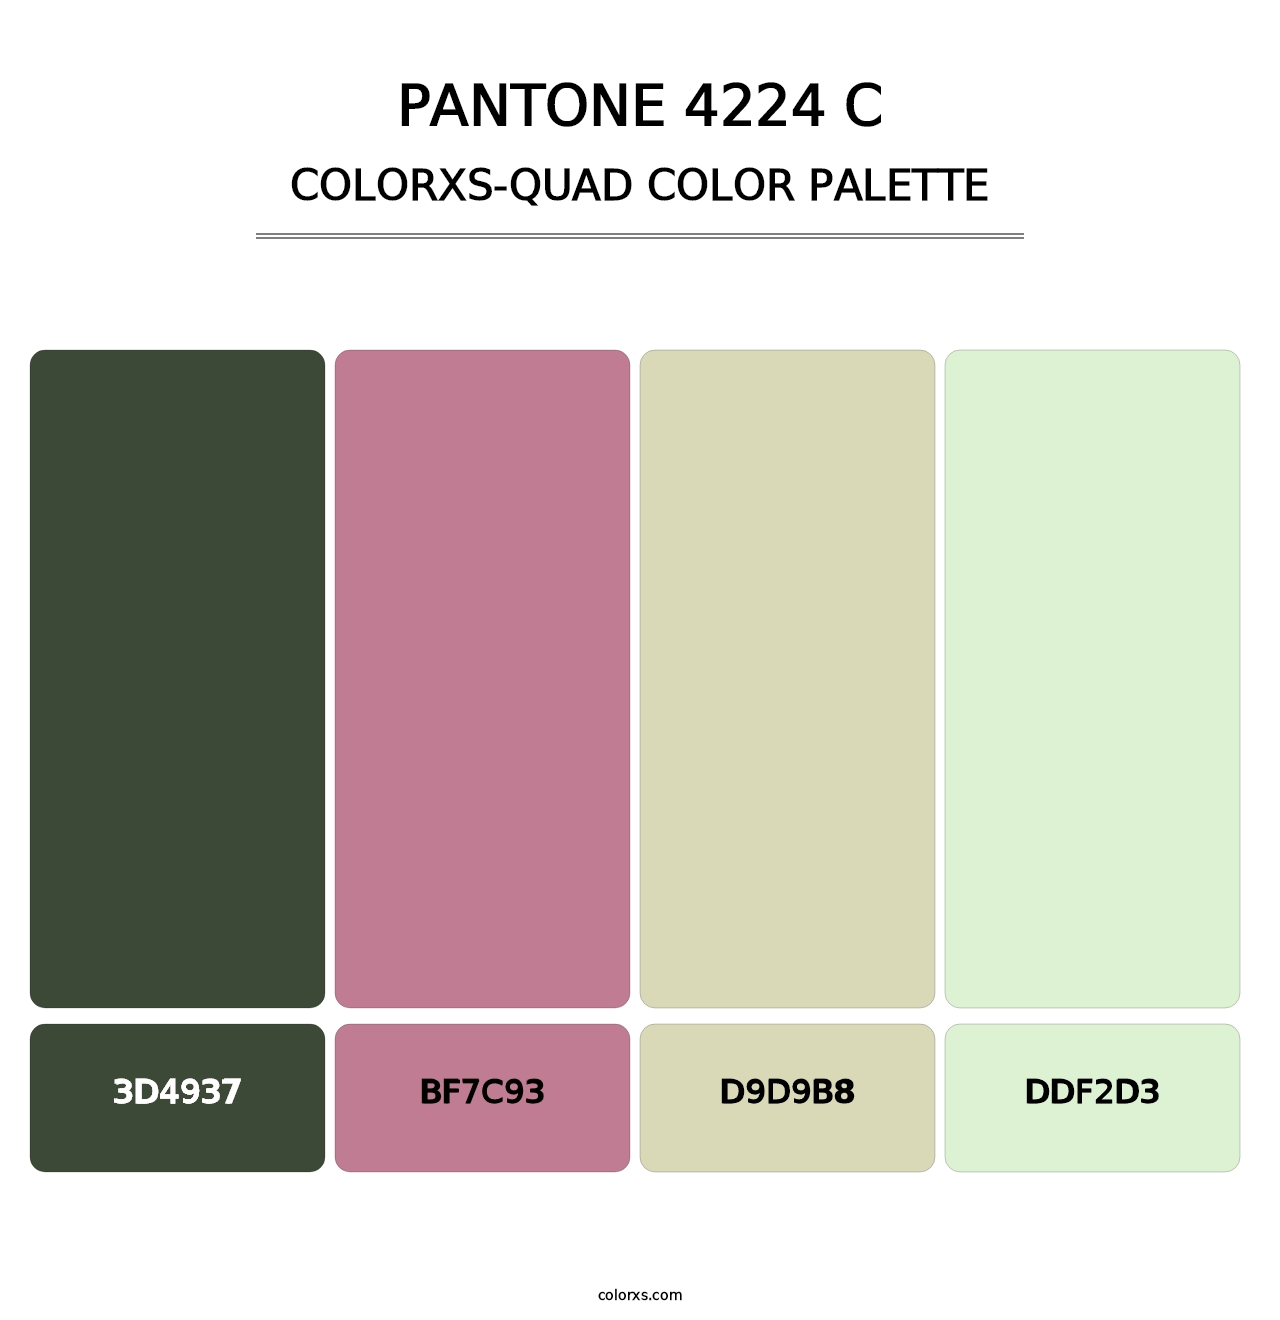 PANTONE 4224 C - Colorxs Quad Palette